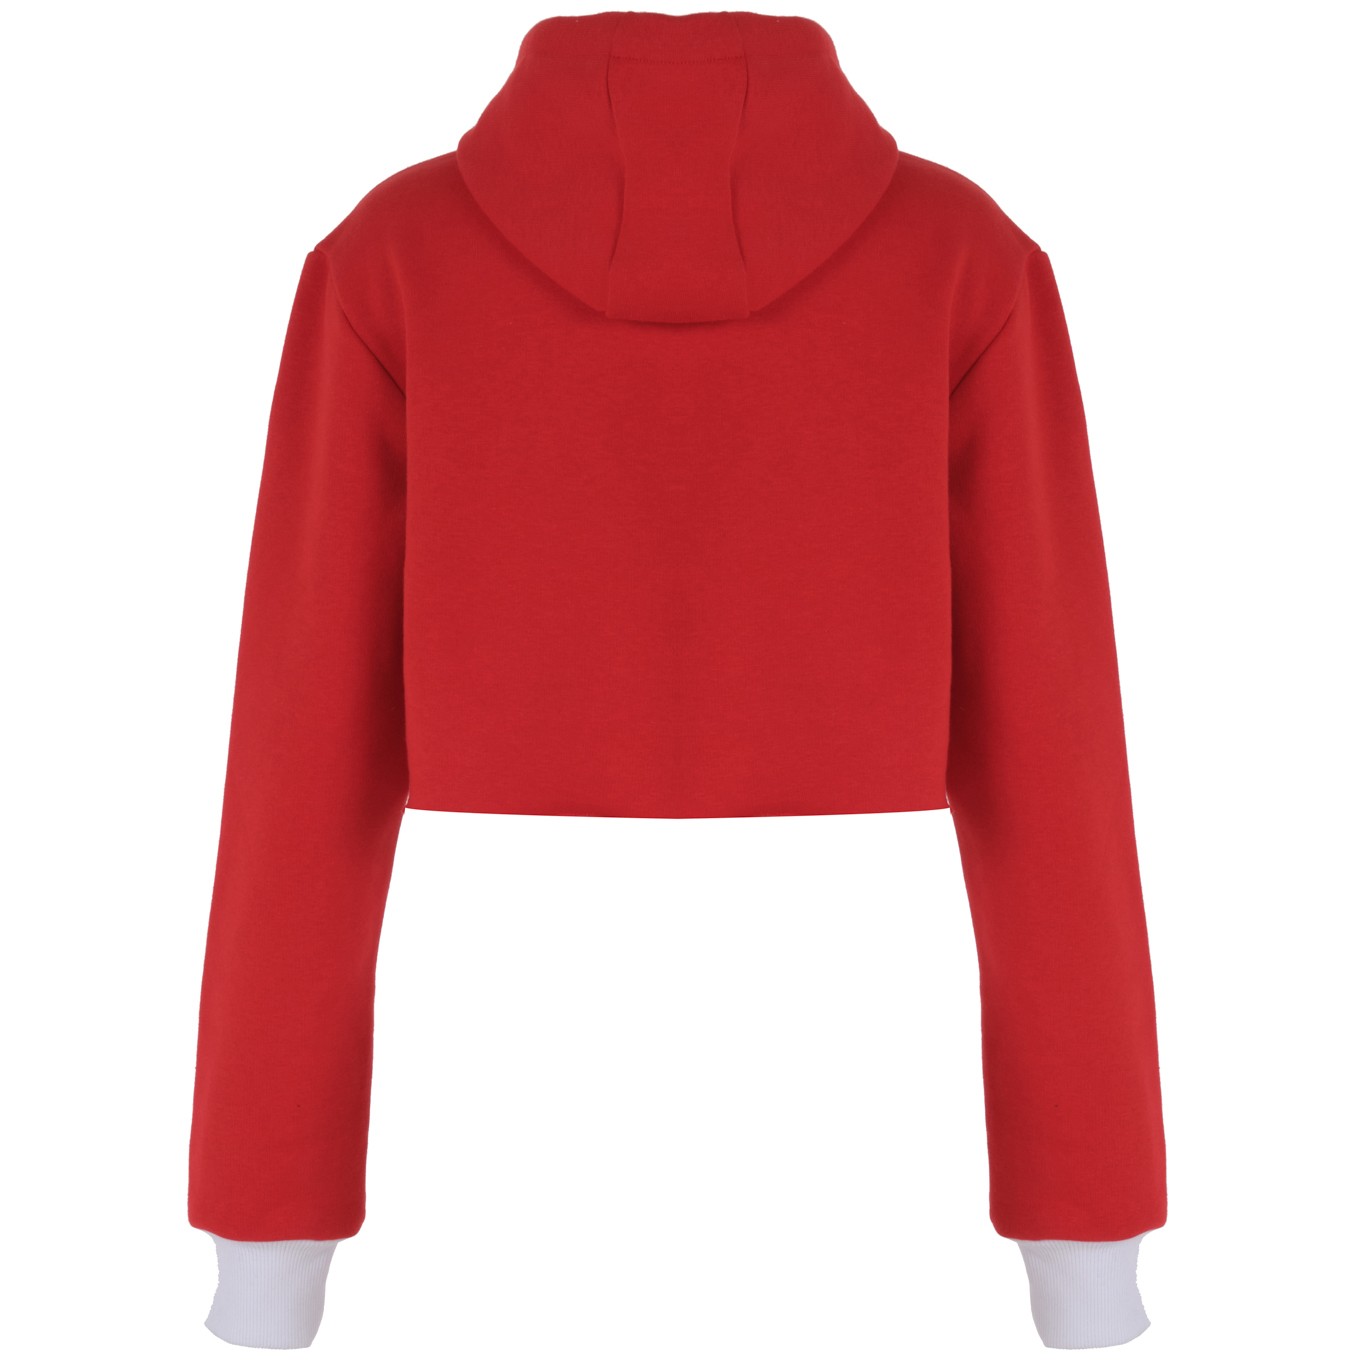 Siren Kadın Kırmızı Kapüşonlu Kısa Sweatshirt